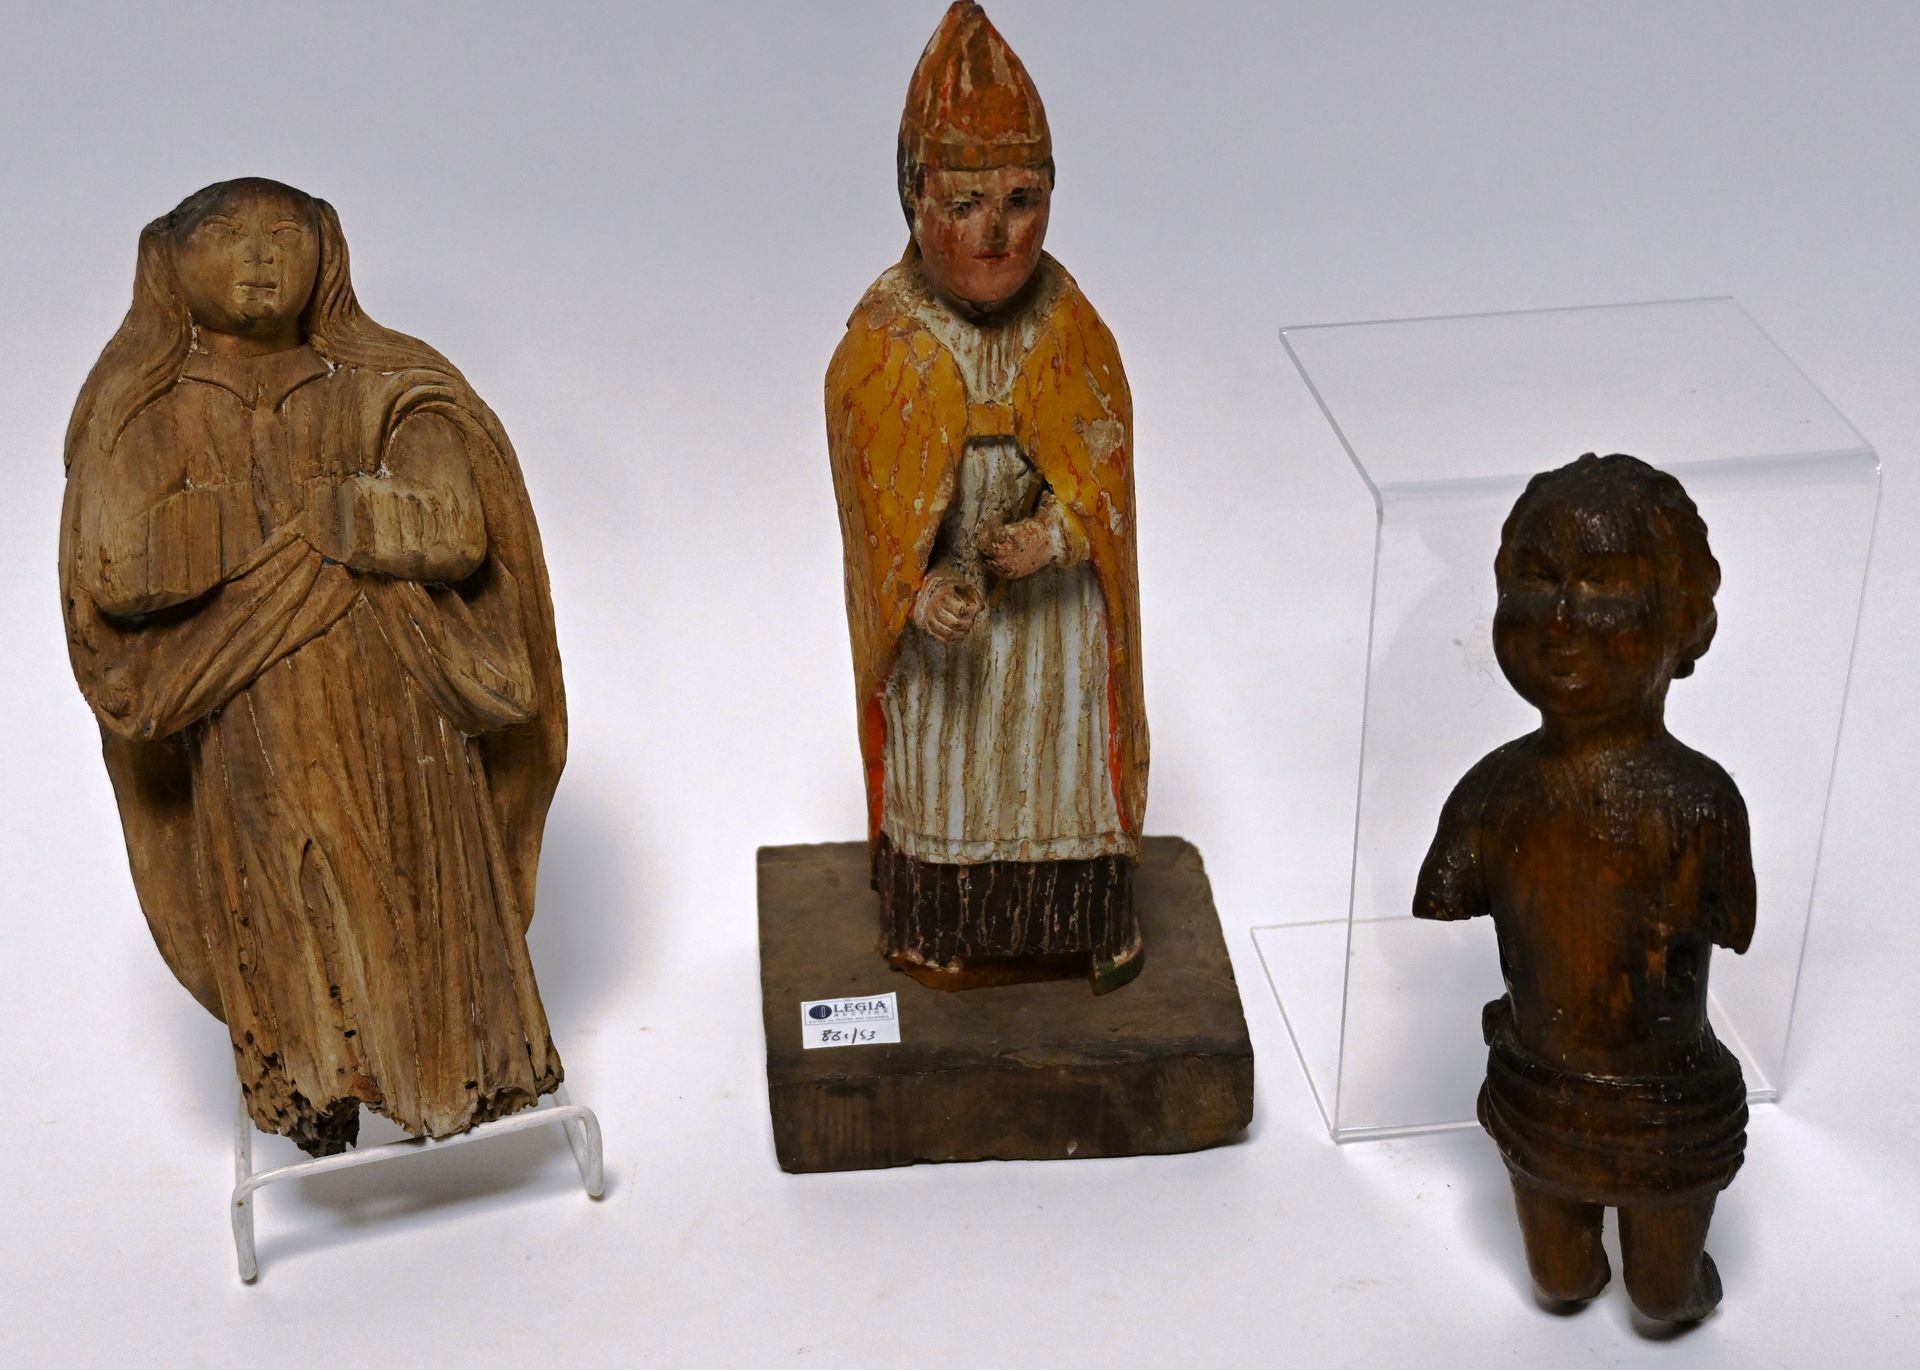 Sute de trois sculptures Suite de trois sculptures en bois à sujet religieux.
Tr&hellip;